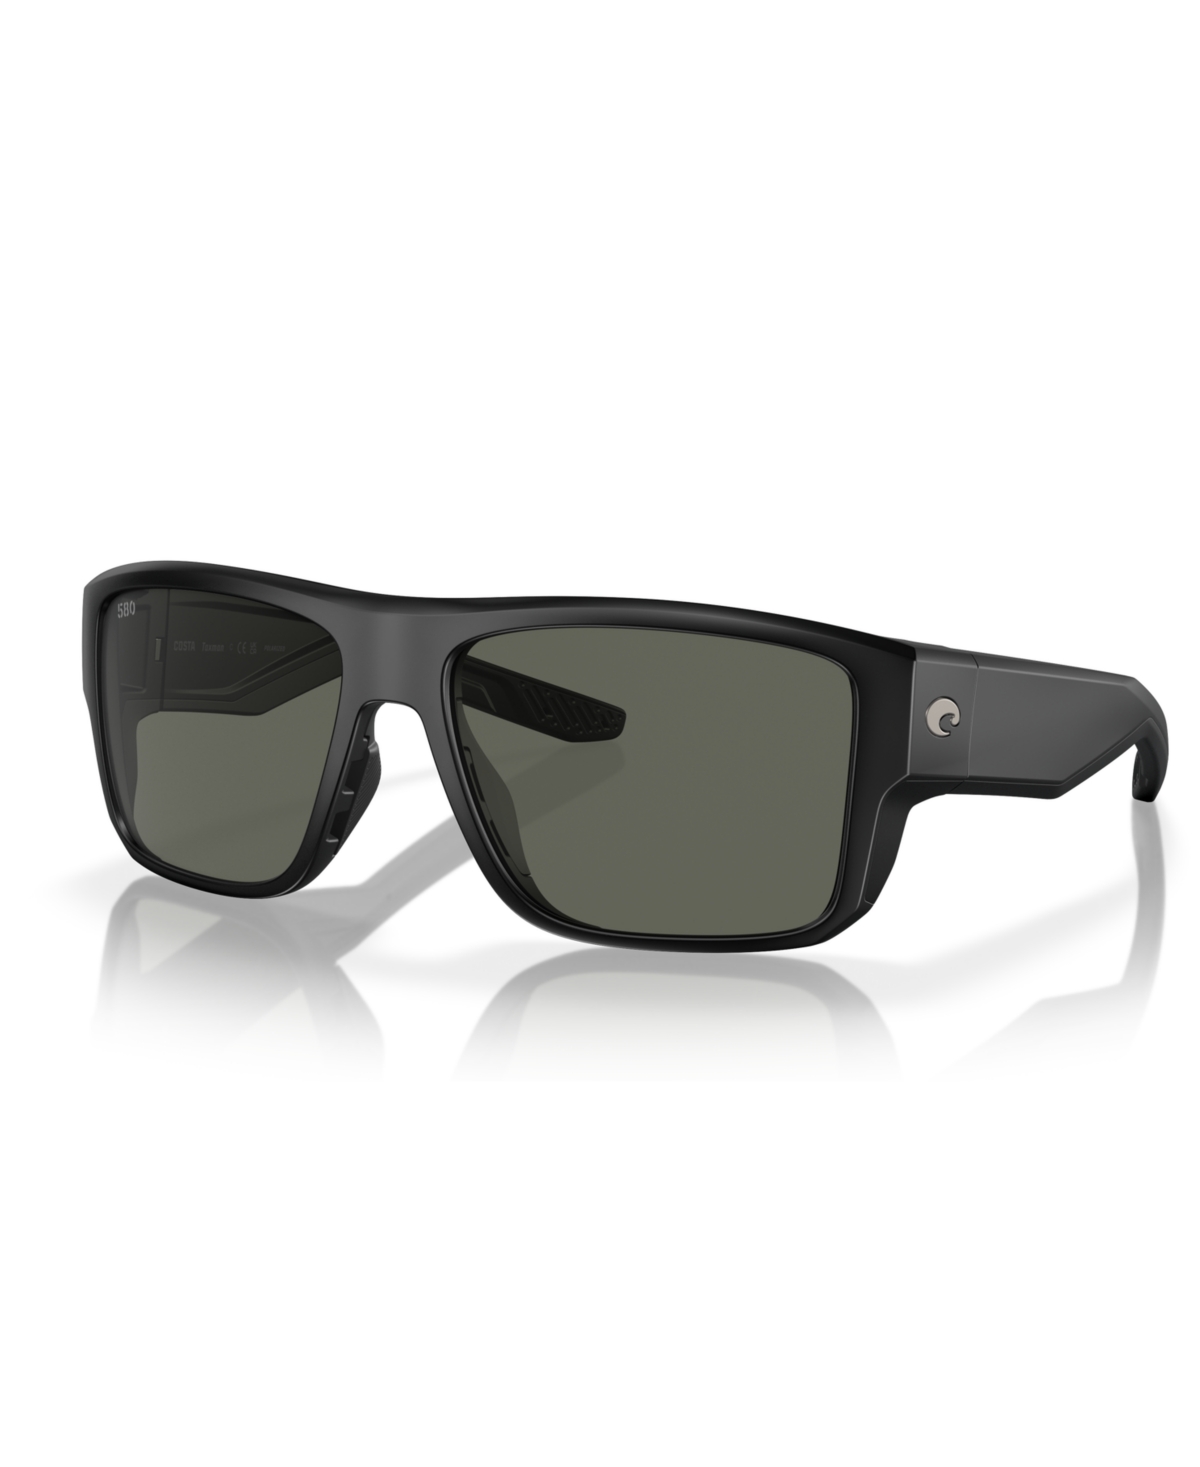 Men's Polarized Sunglasses, Taxman 6S9116 - Matte Black